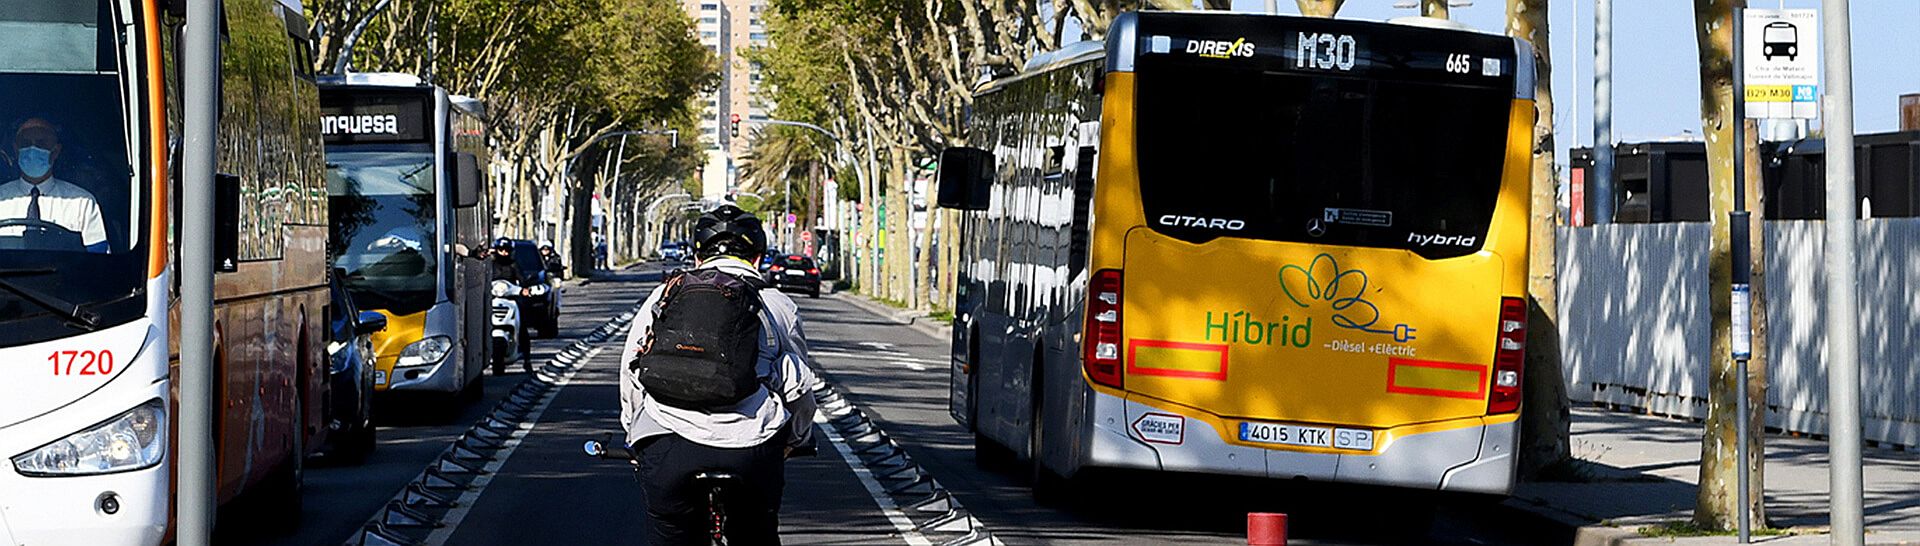 Mobilitat i transport públic